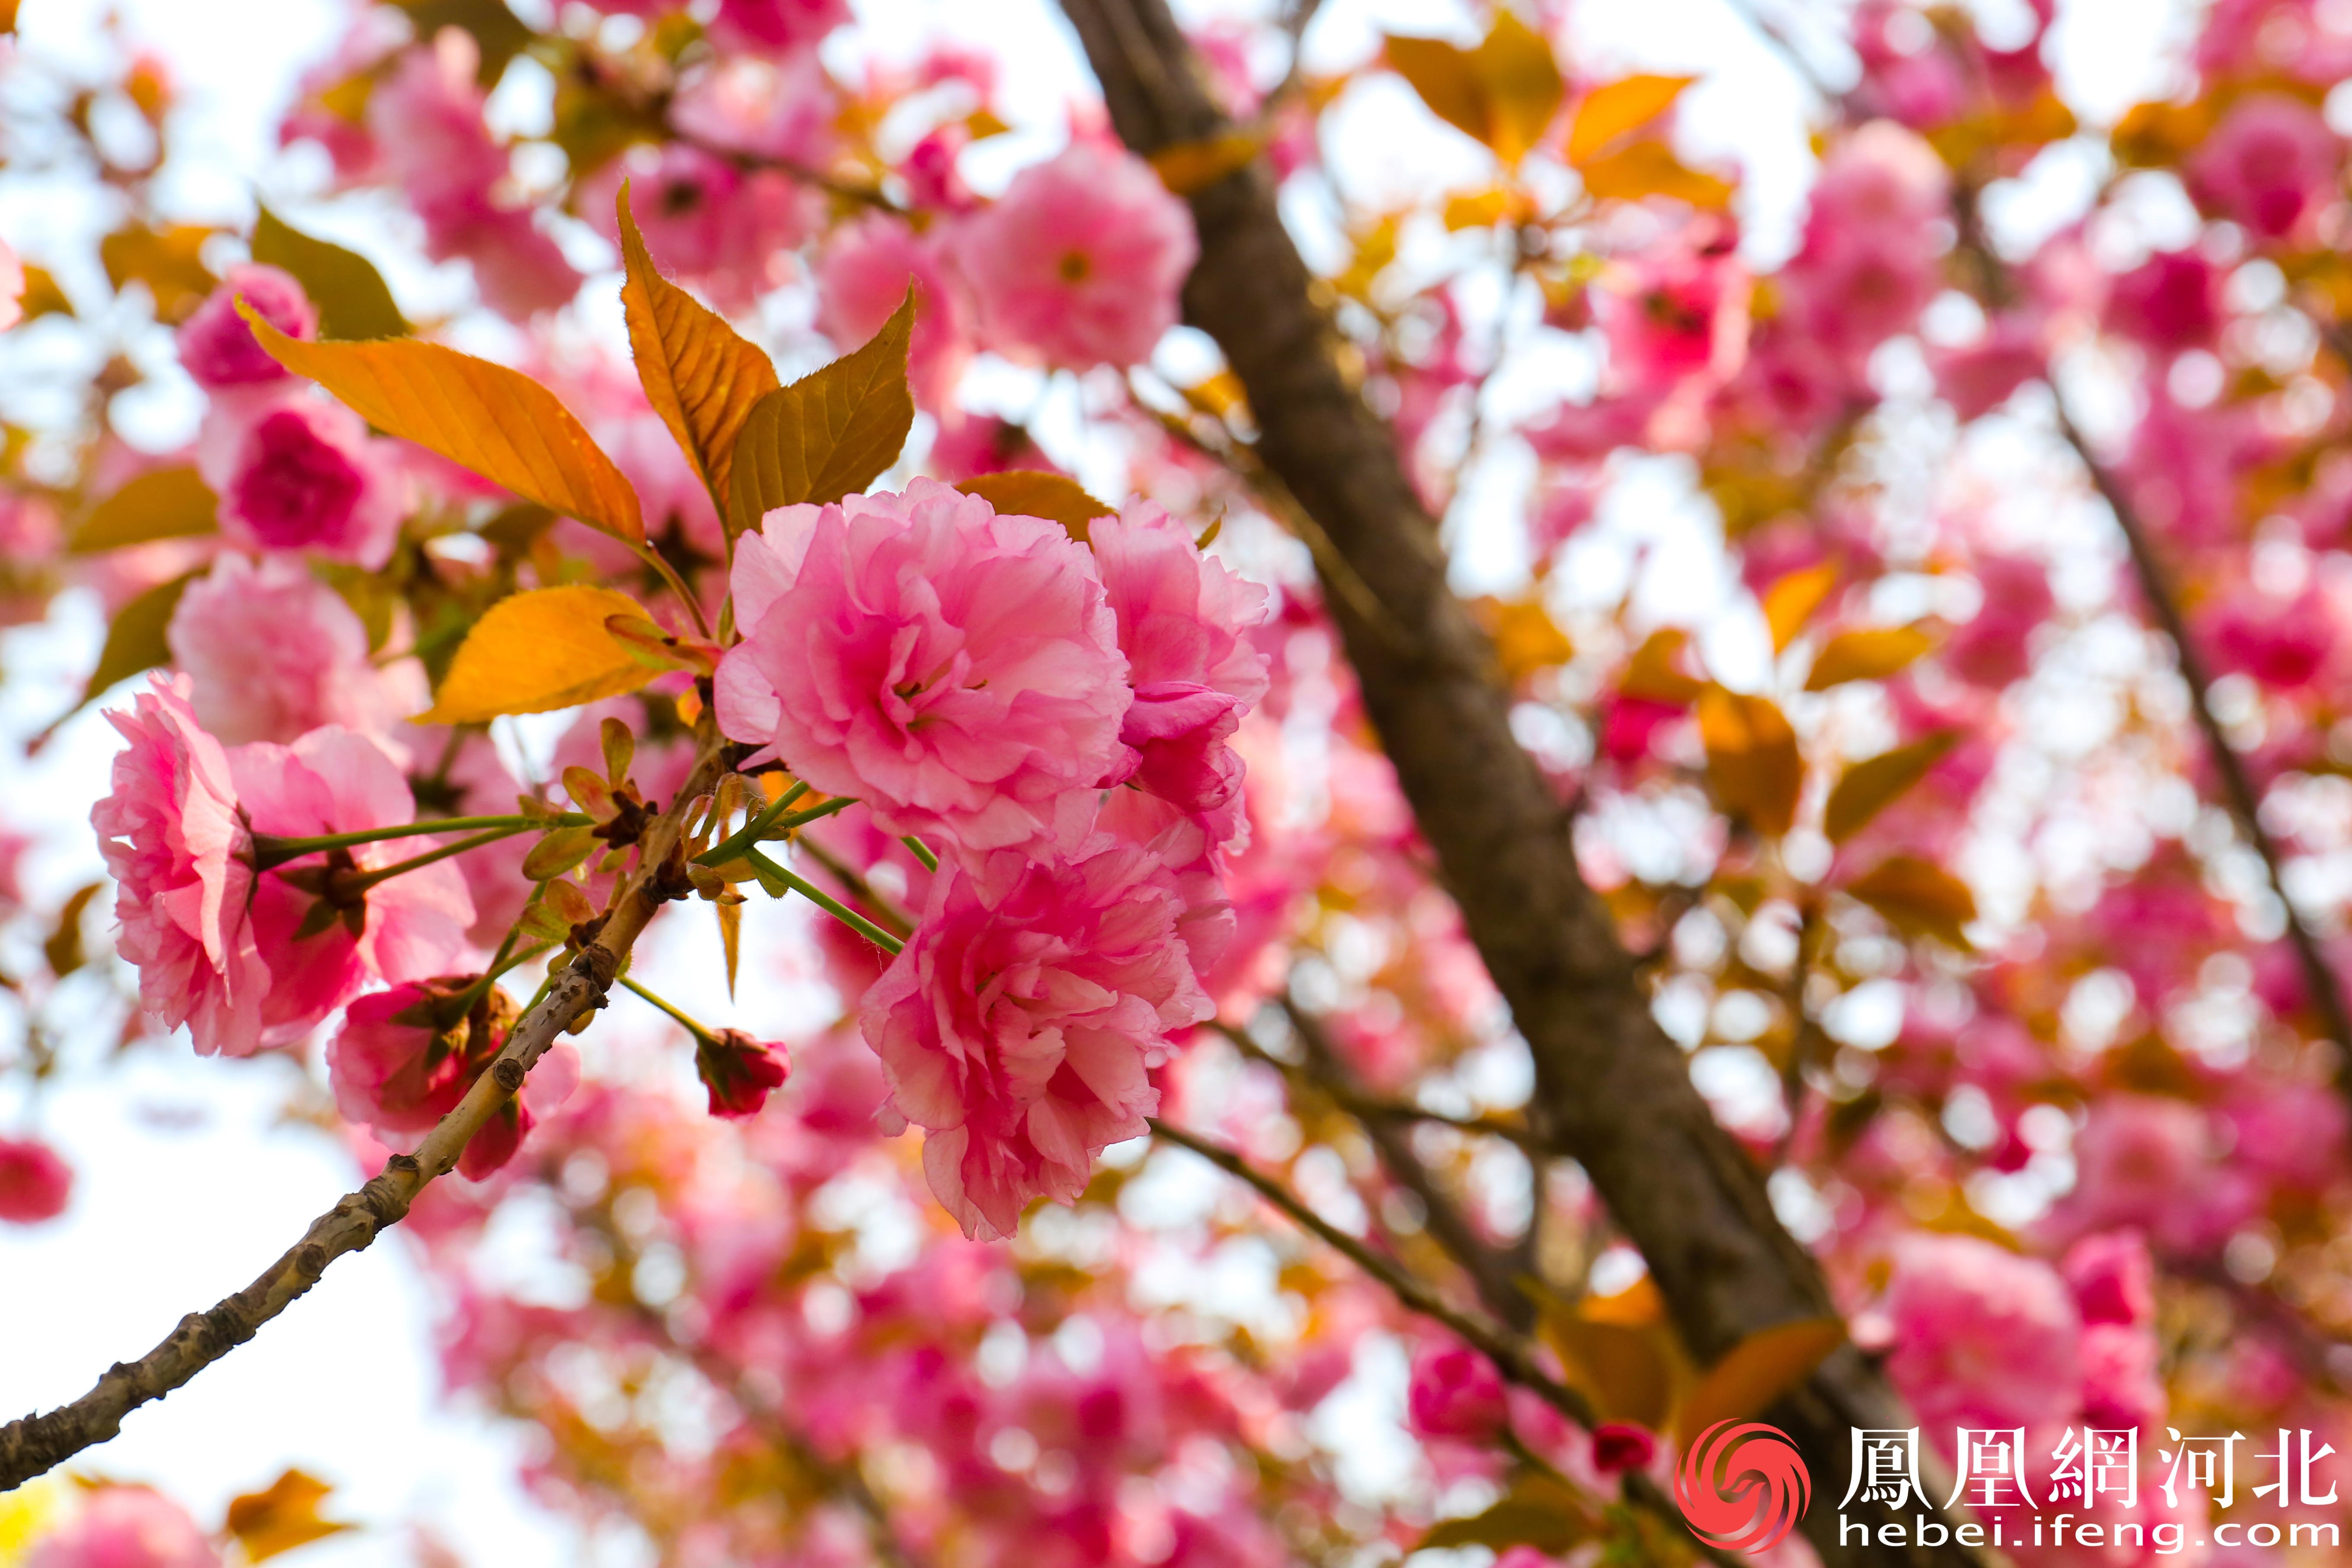 樱花挂满枝头将裕西公园装点得如诗如画。